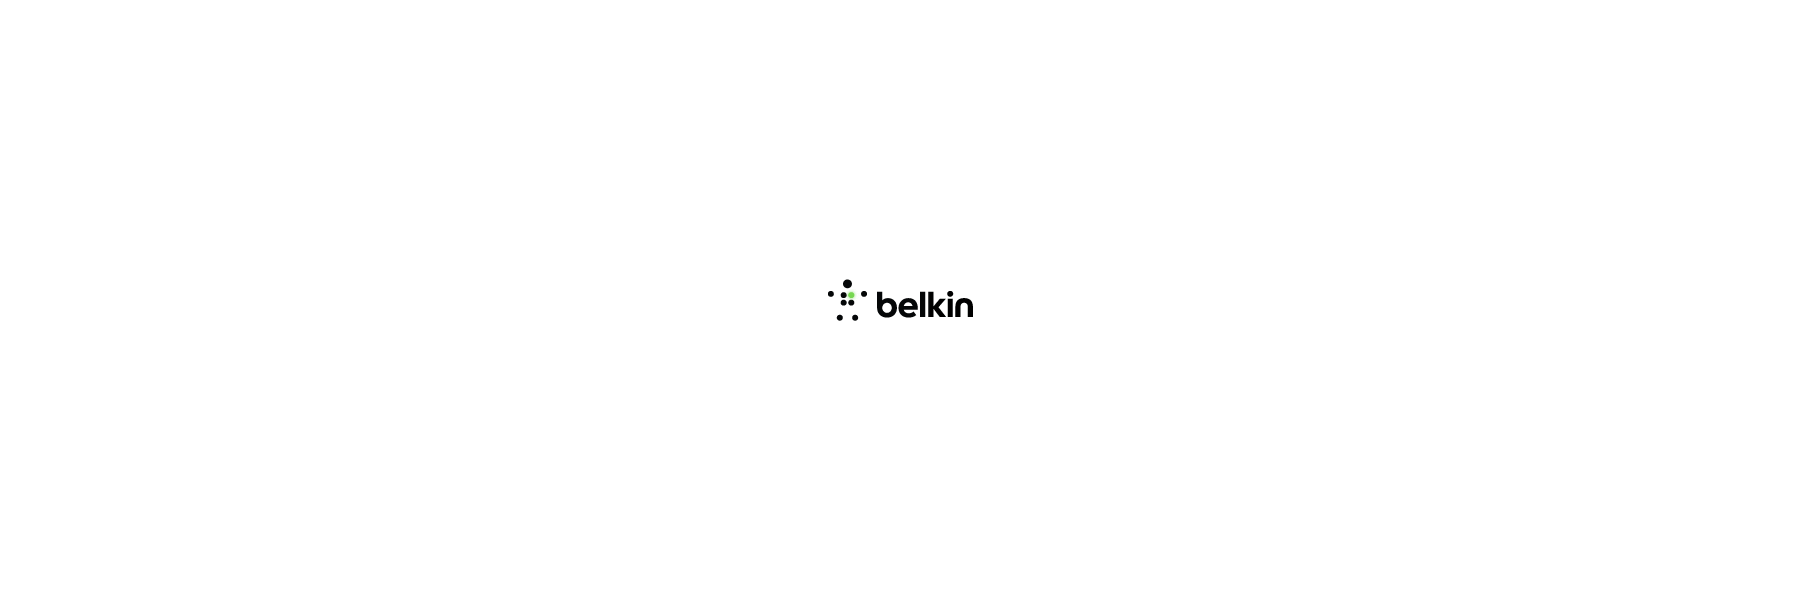  Belkin bietet seit fast 30 Jahren von Menschen...